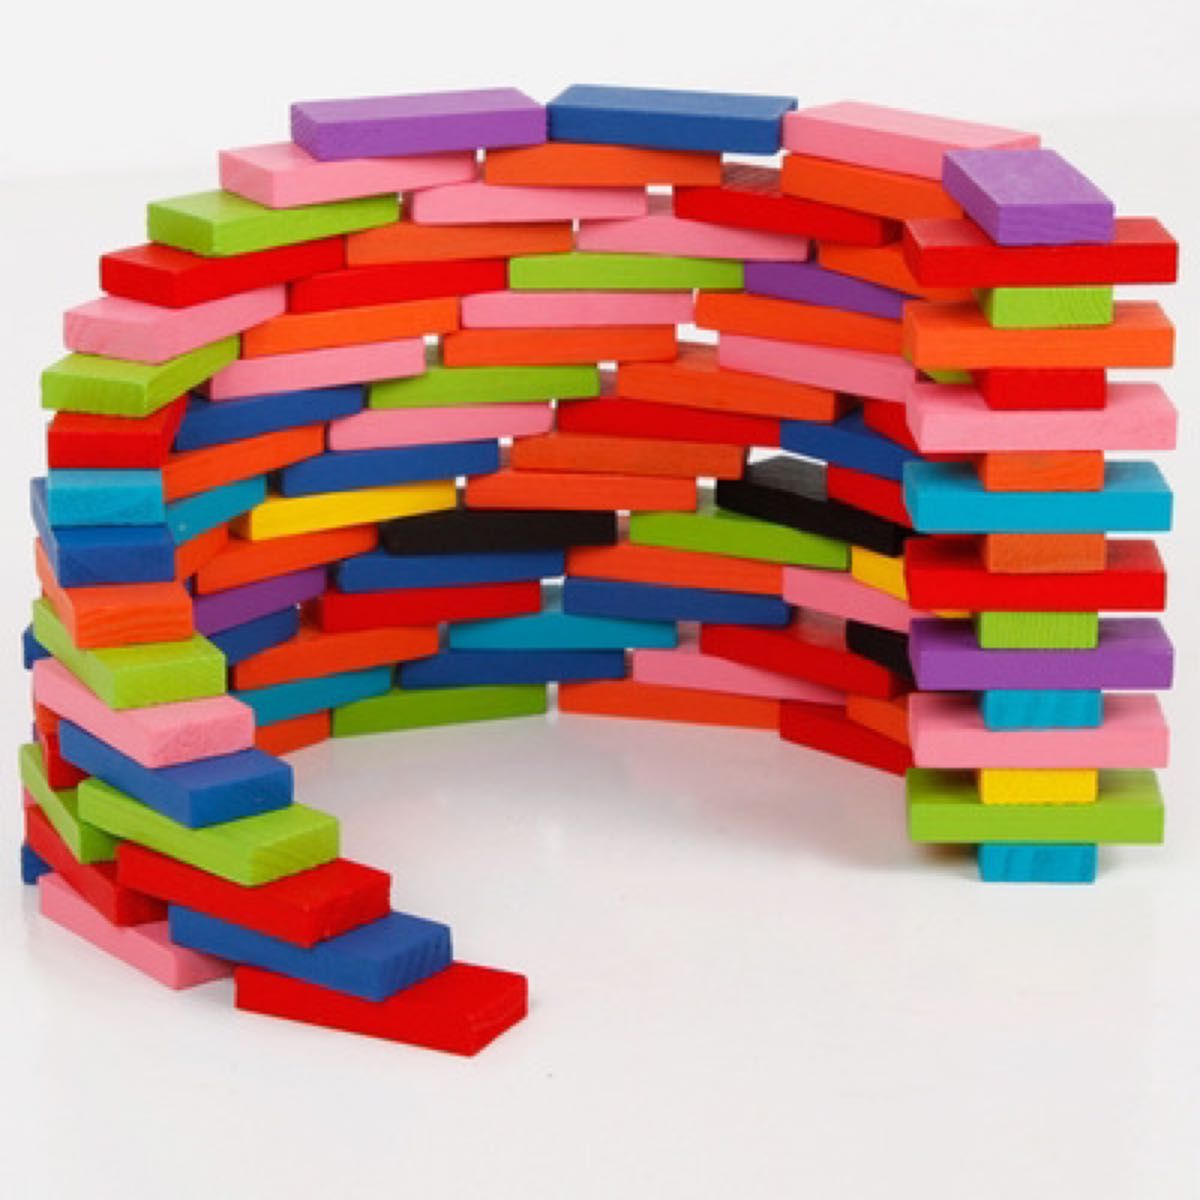 カラフル ドミノ 12色 240個 知育玩具 積み木 木製 おもちゃ 子ども